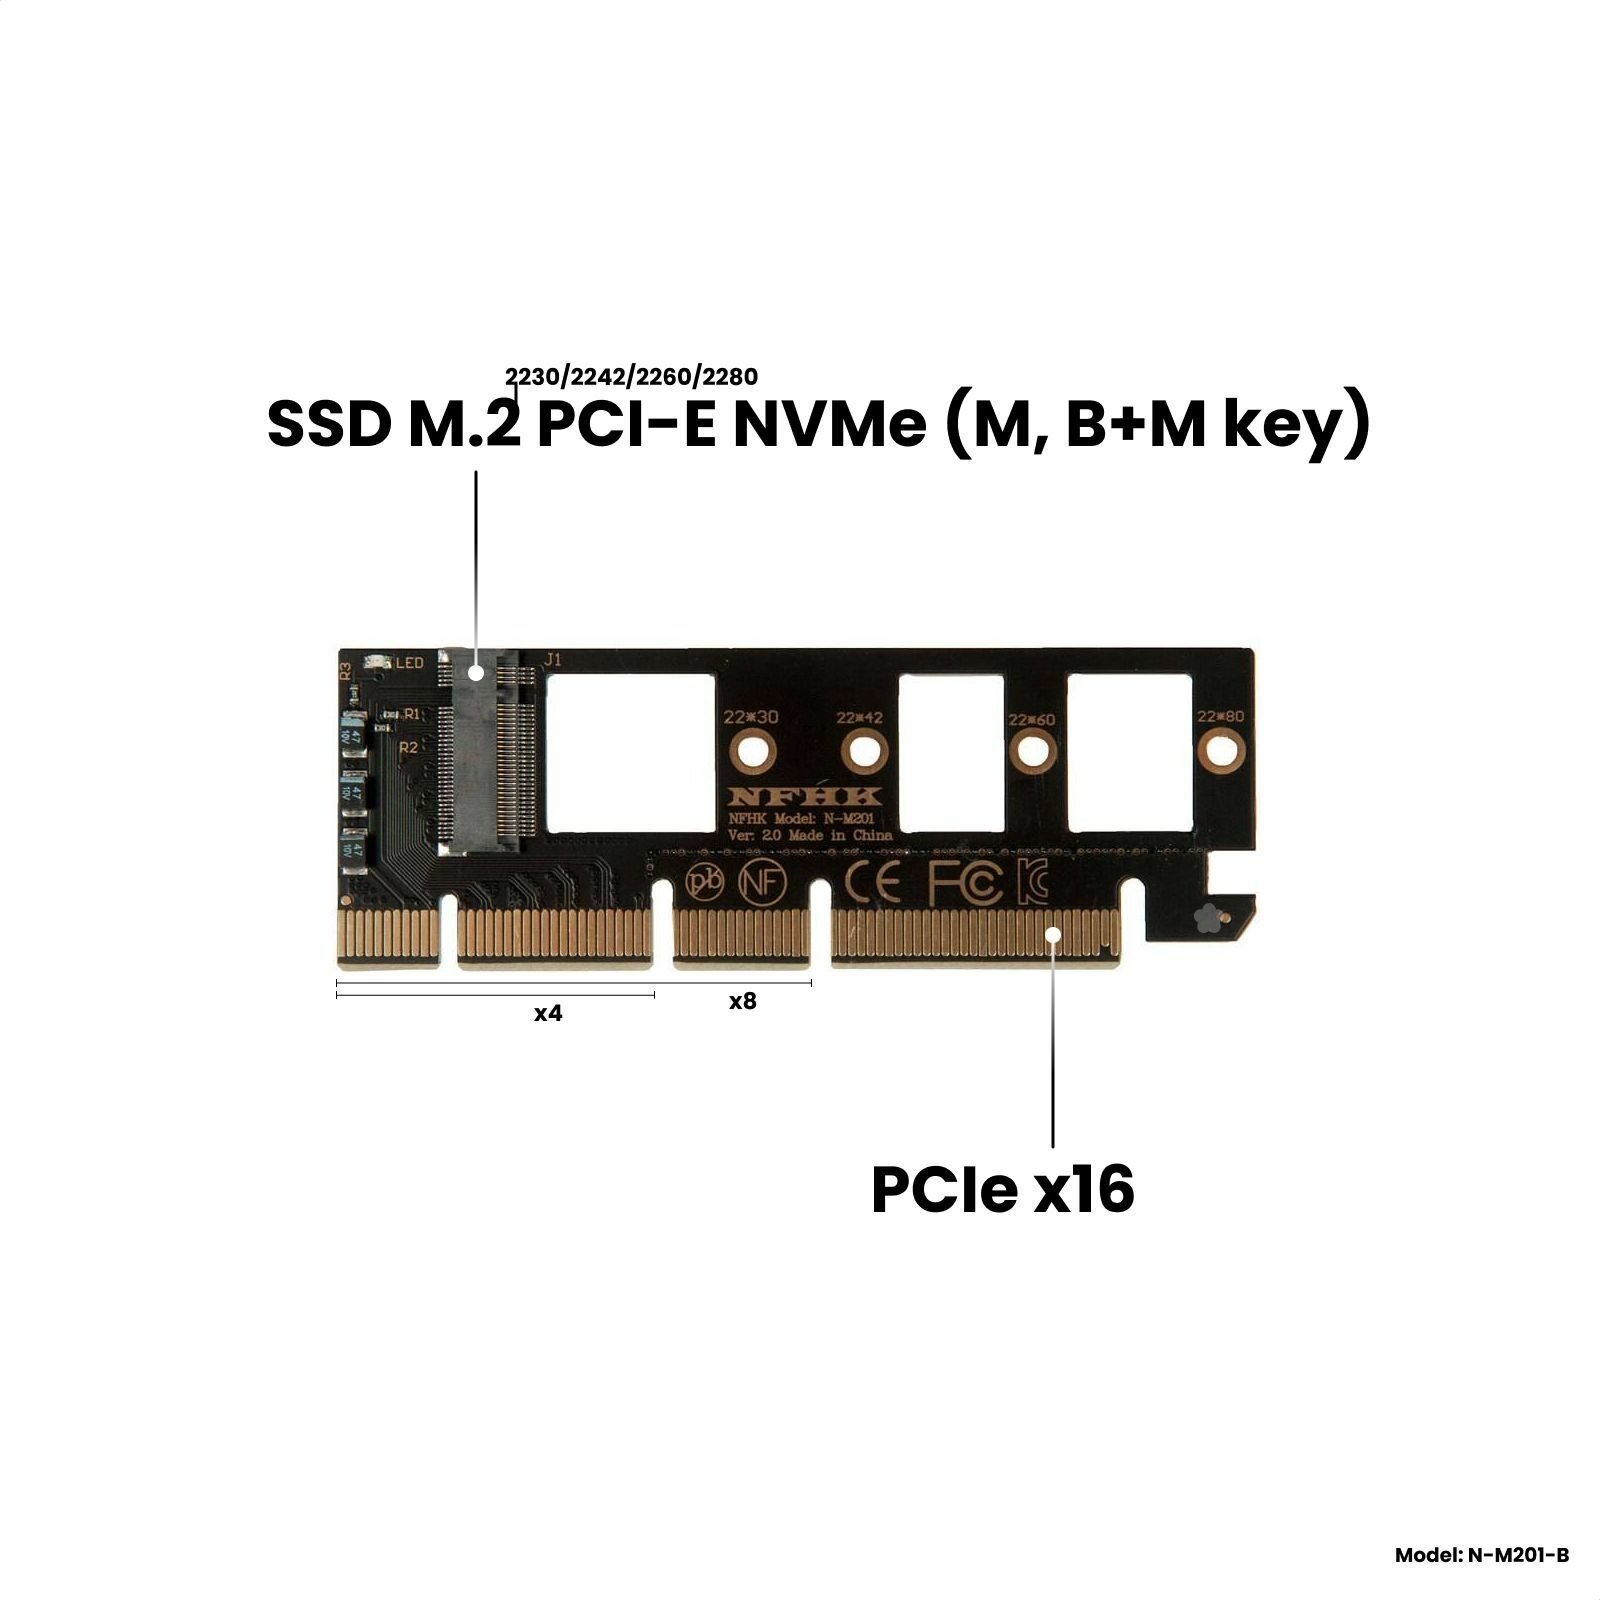 Адаптер-переходник (плата расширения) для установки SSD M.2 2230-2280 PCI-E NVMe (M B+M key) в слот PCI-E 3.0/4.0 x4/x8/x16 черный NHFK N-M201